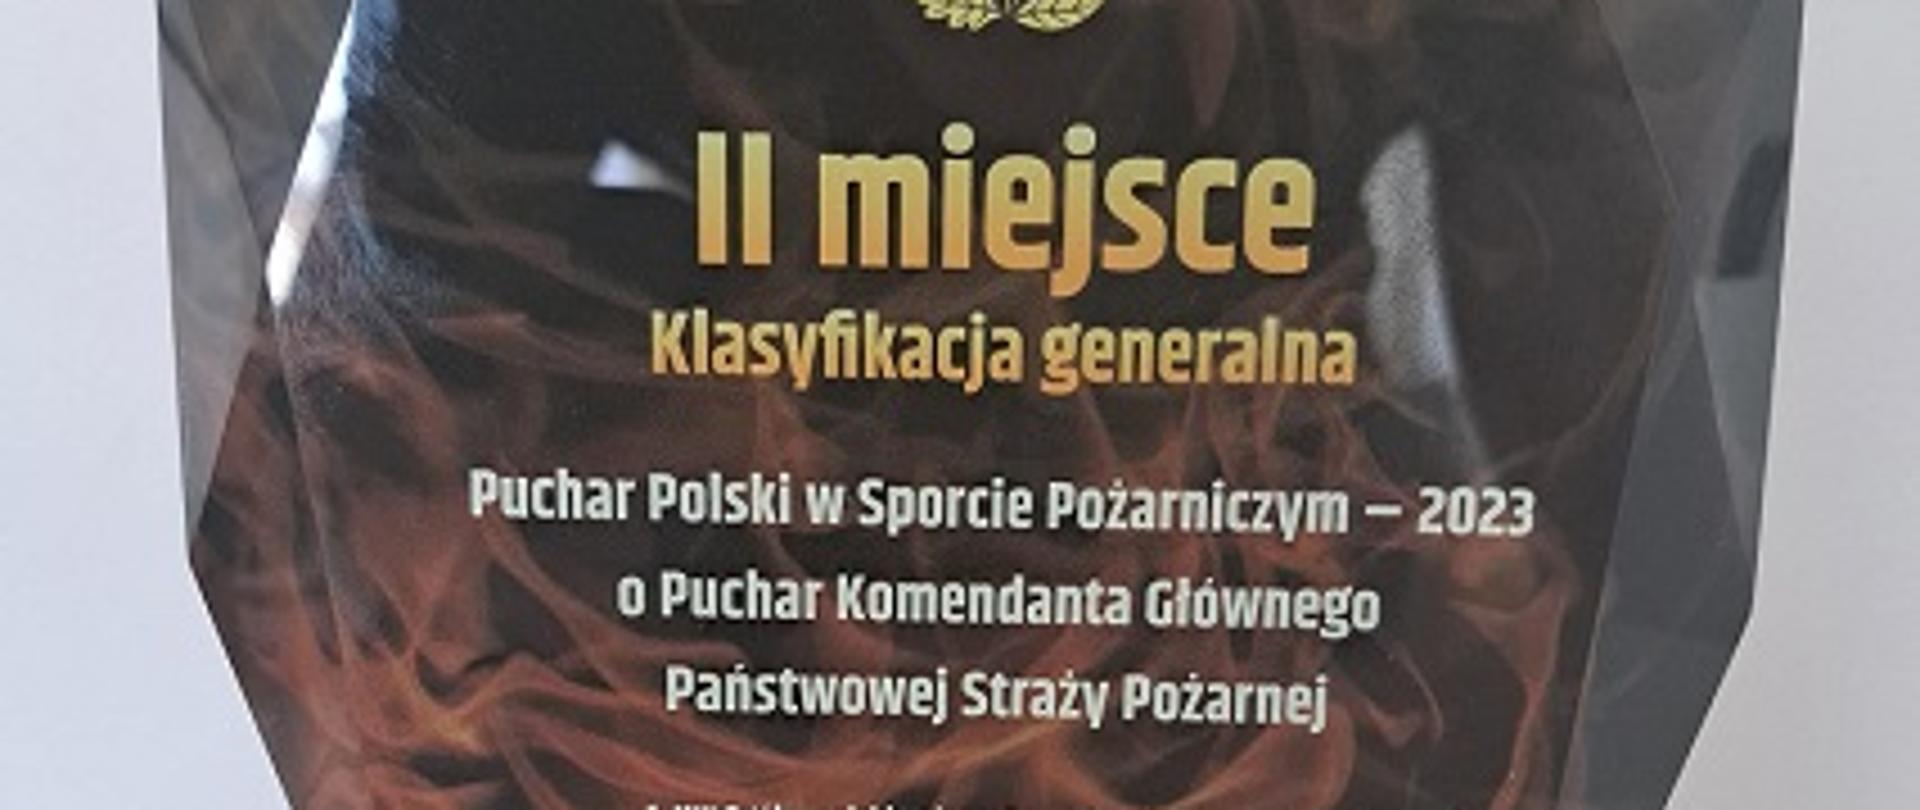 Statuetka za zajęcie II miejsca w Klasyfikacji Generalnej Pucharu Polski w Sporcie Pożarniczym 2023